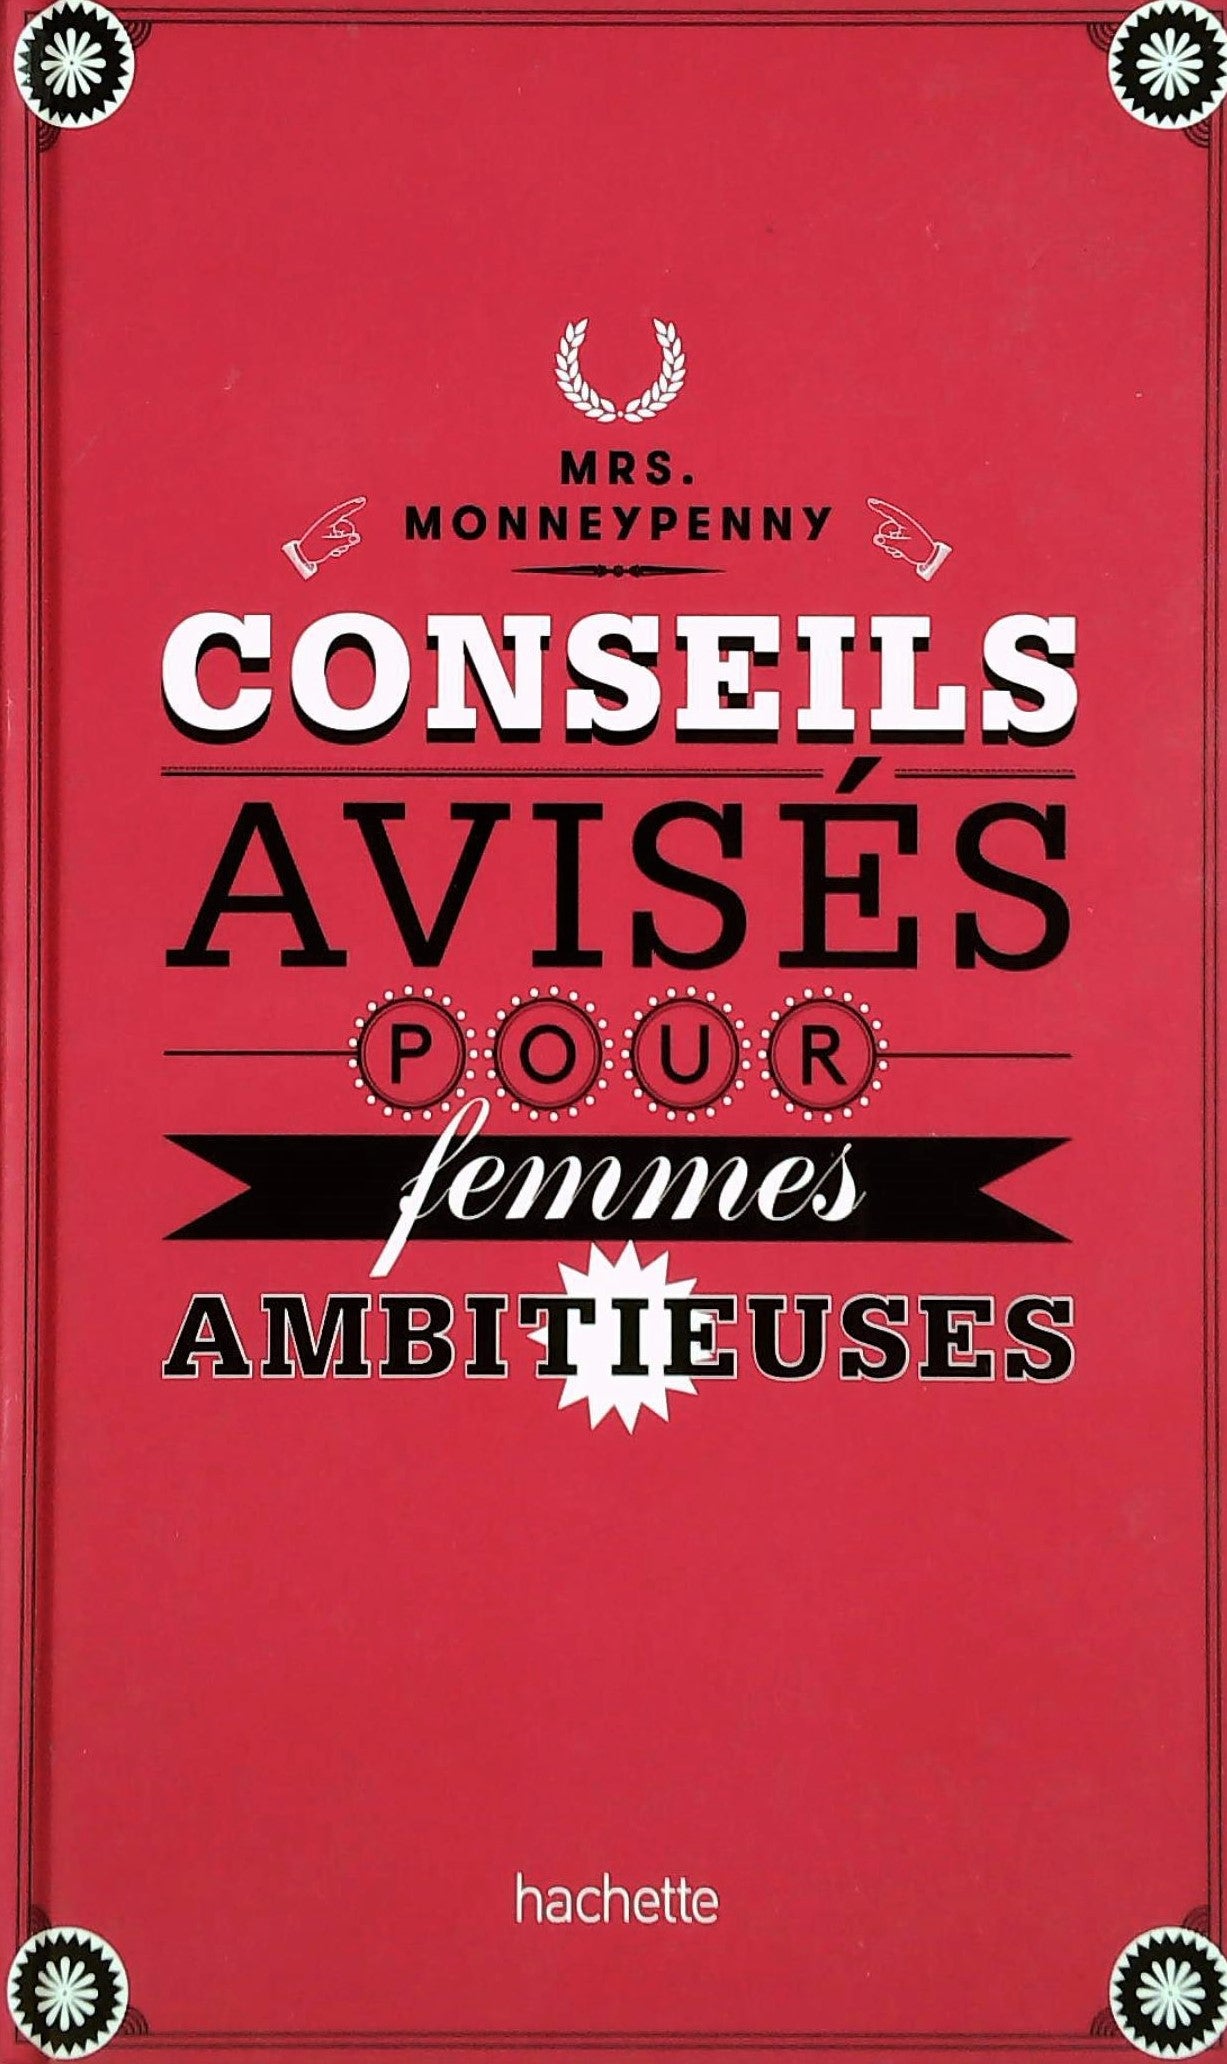 Livre ISBN 2012309321 Conseils avisés pour femmes ambitieuses (Mrs. Monneypenny)